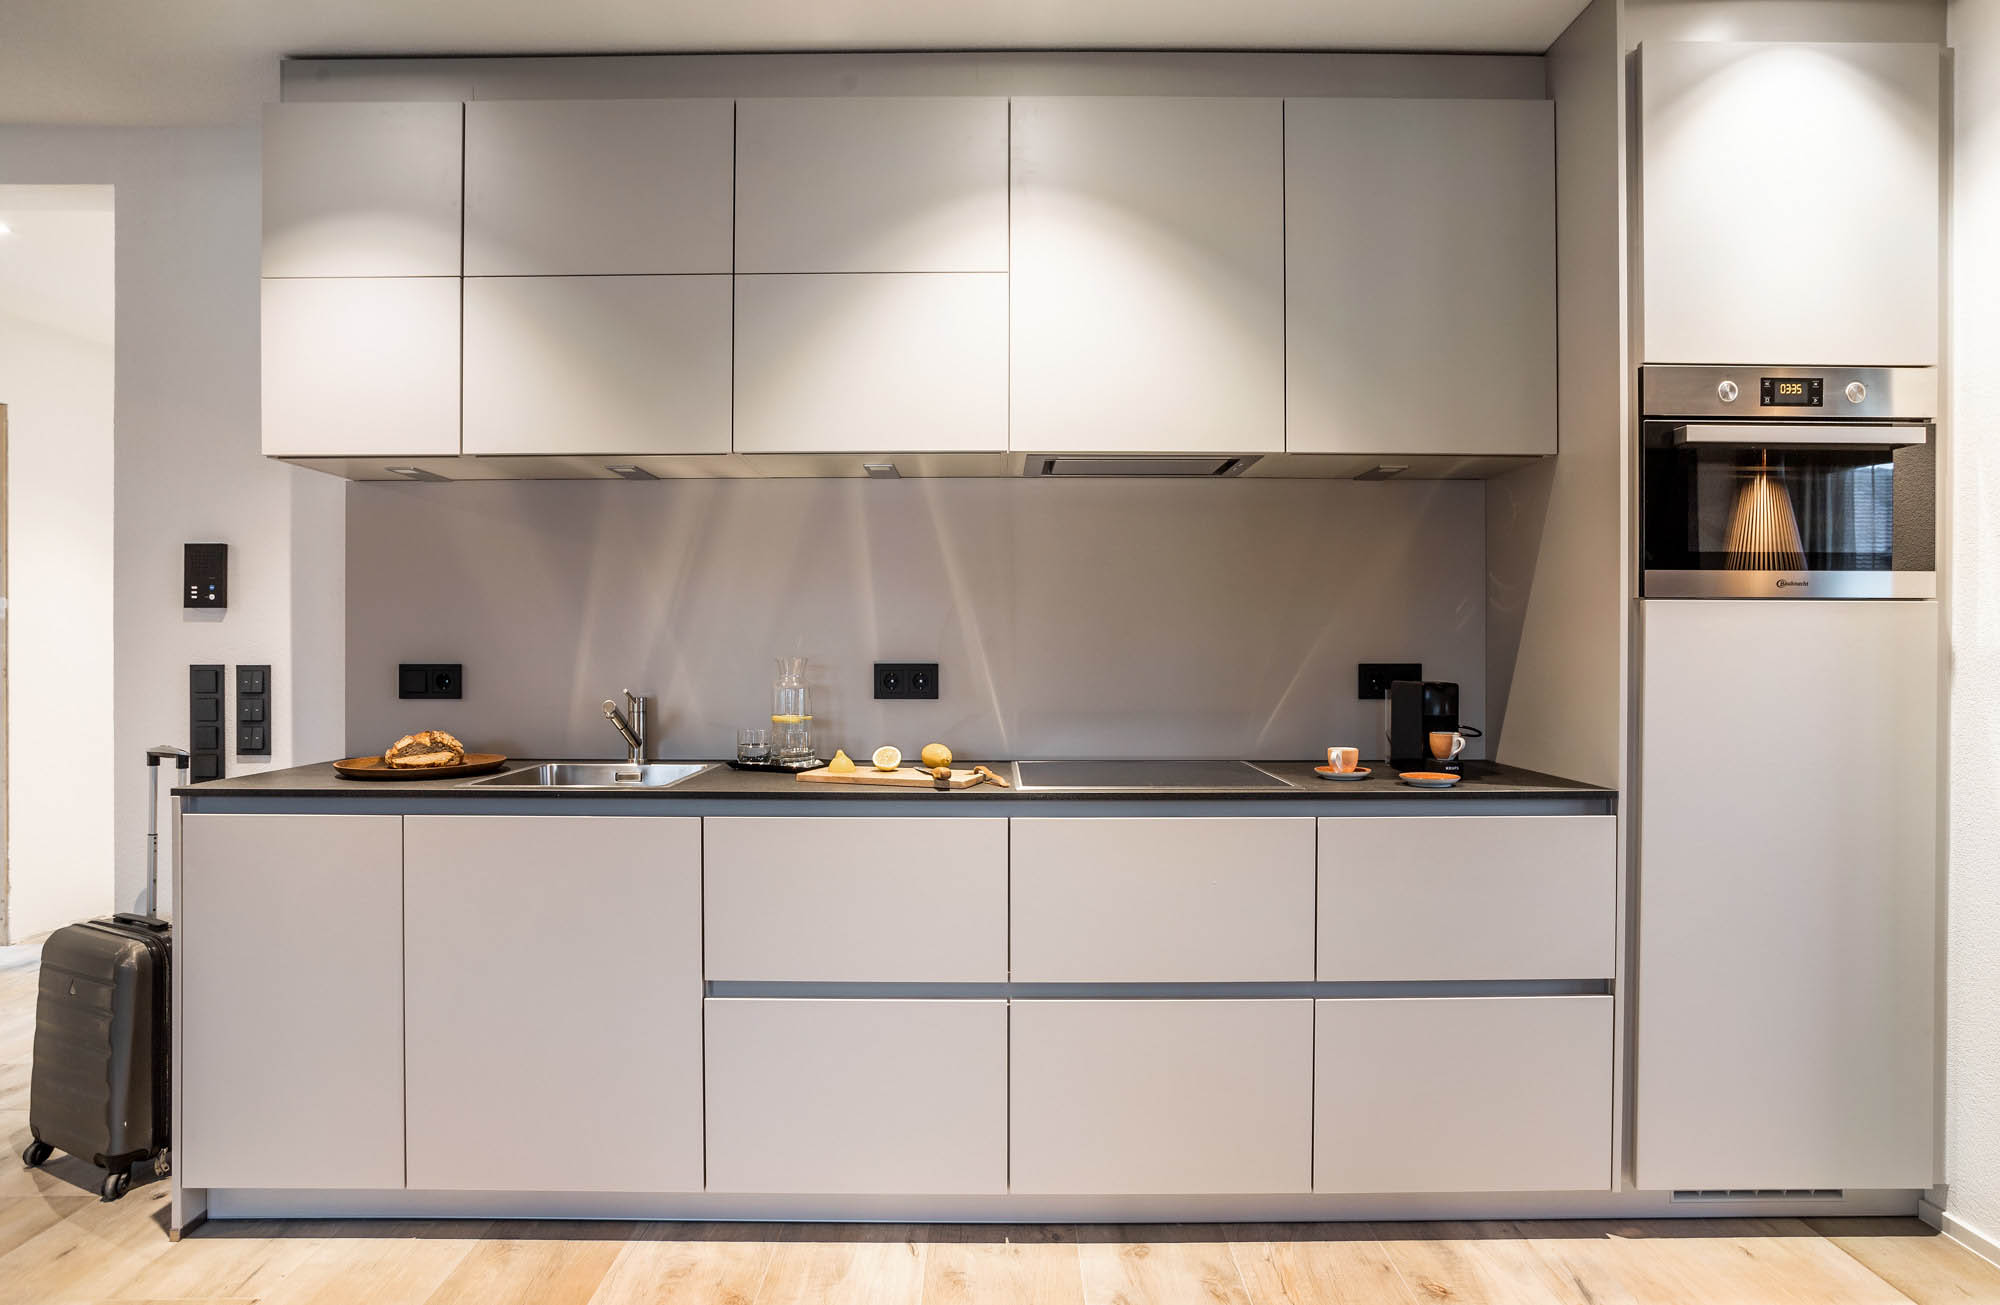 Die Küchenzeile in hellem Grau ist mit allen notwendigen Geräten und einer Kapsle-Kaffemaschine ausgestattet